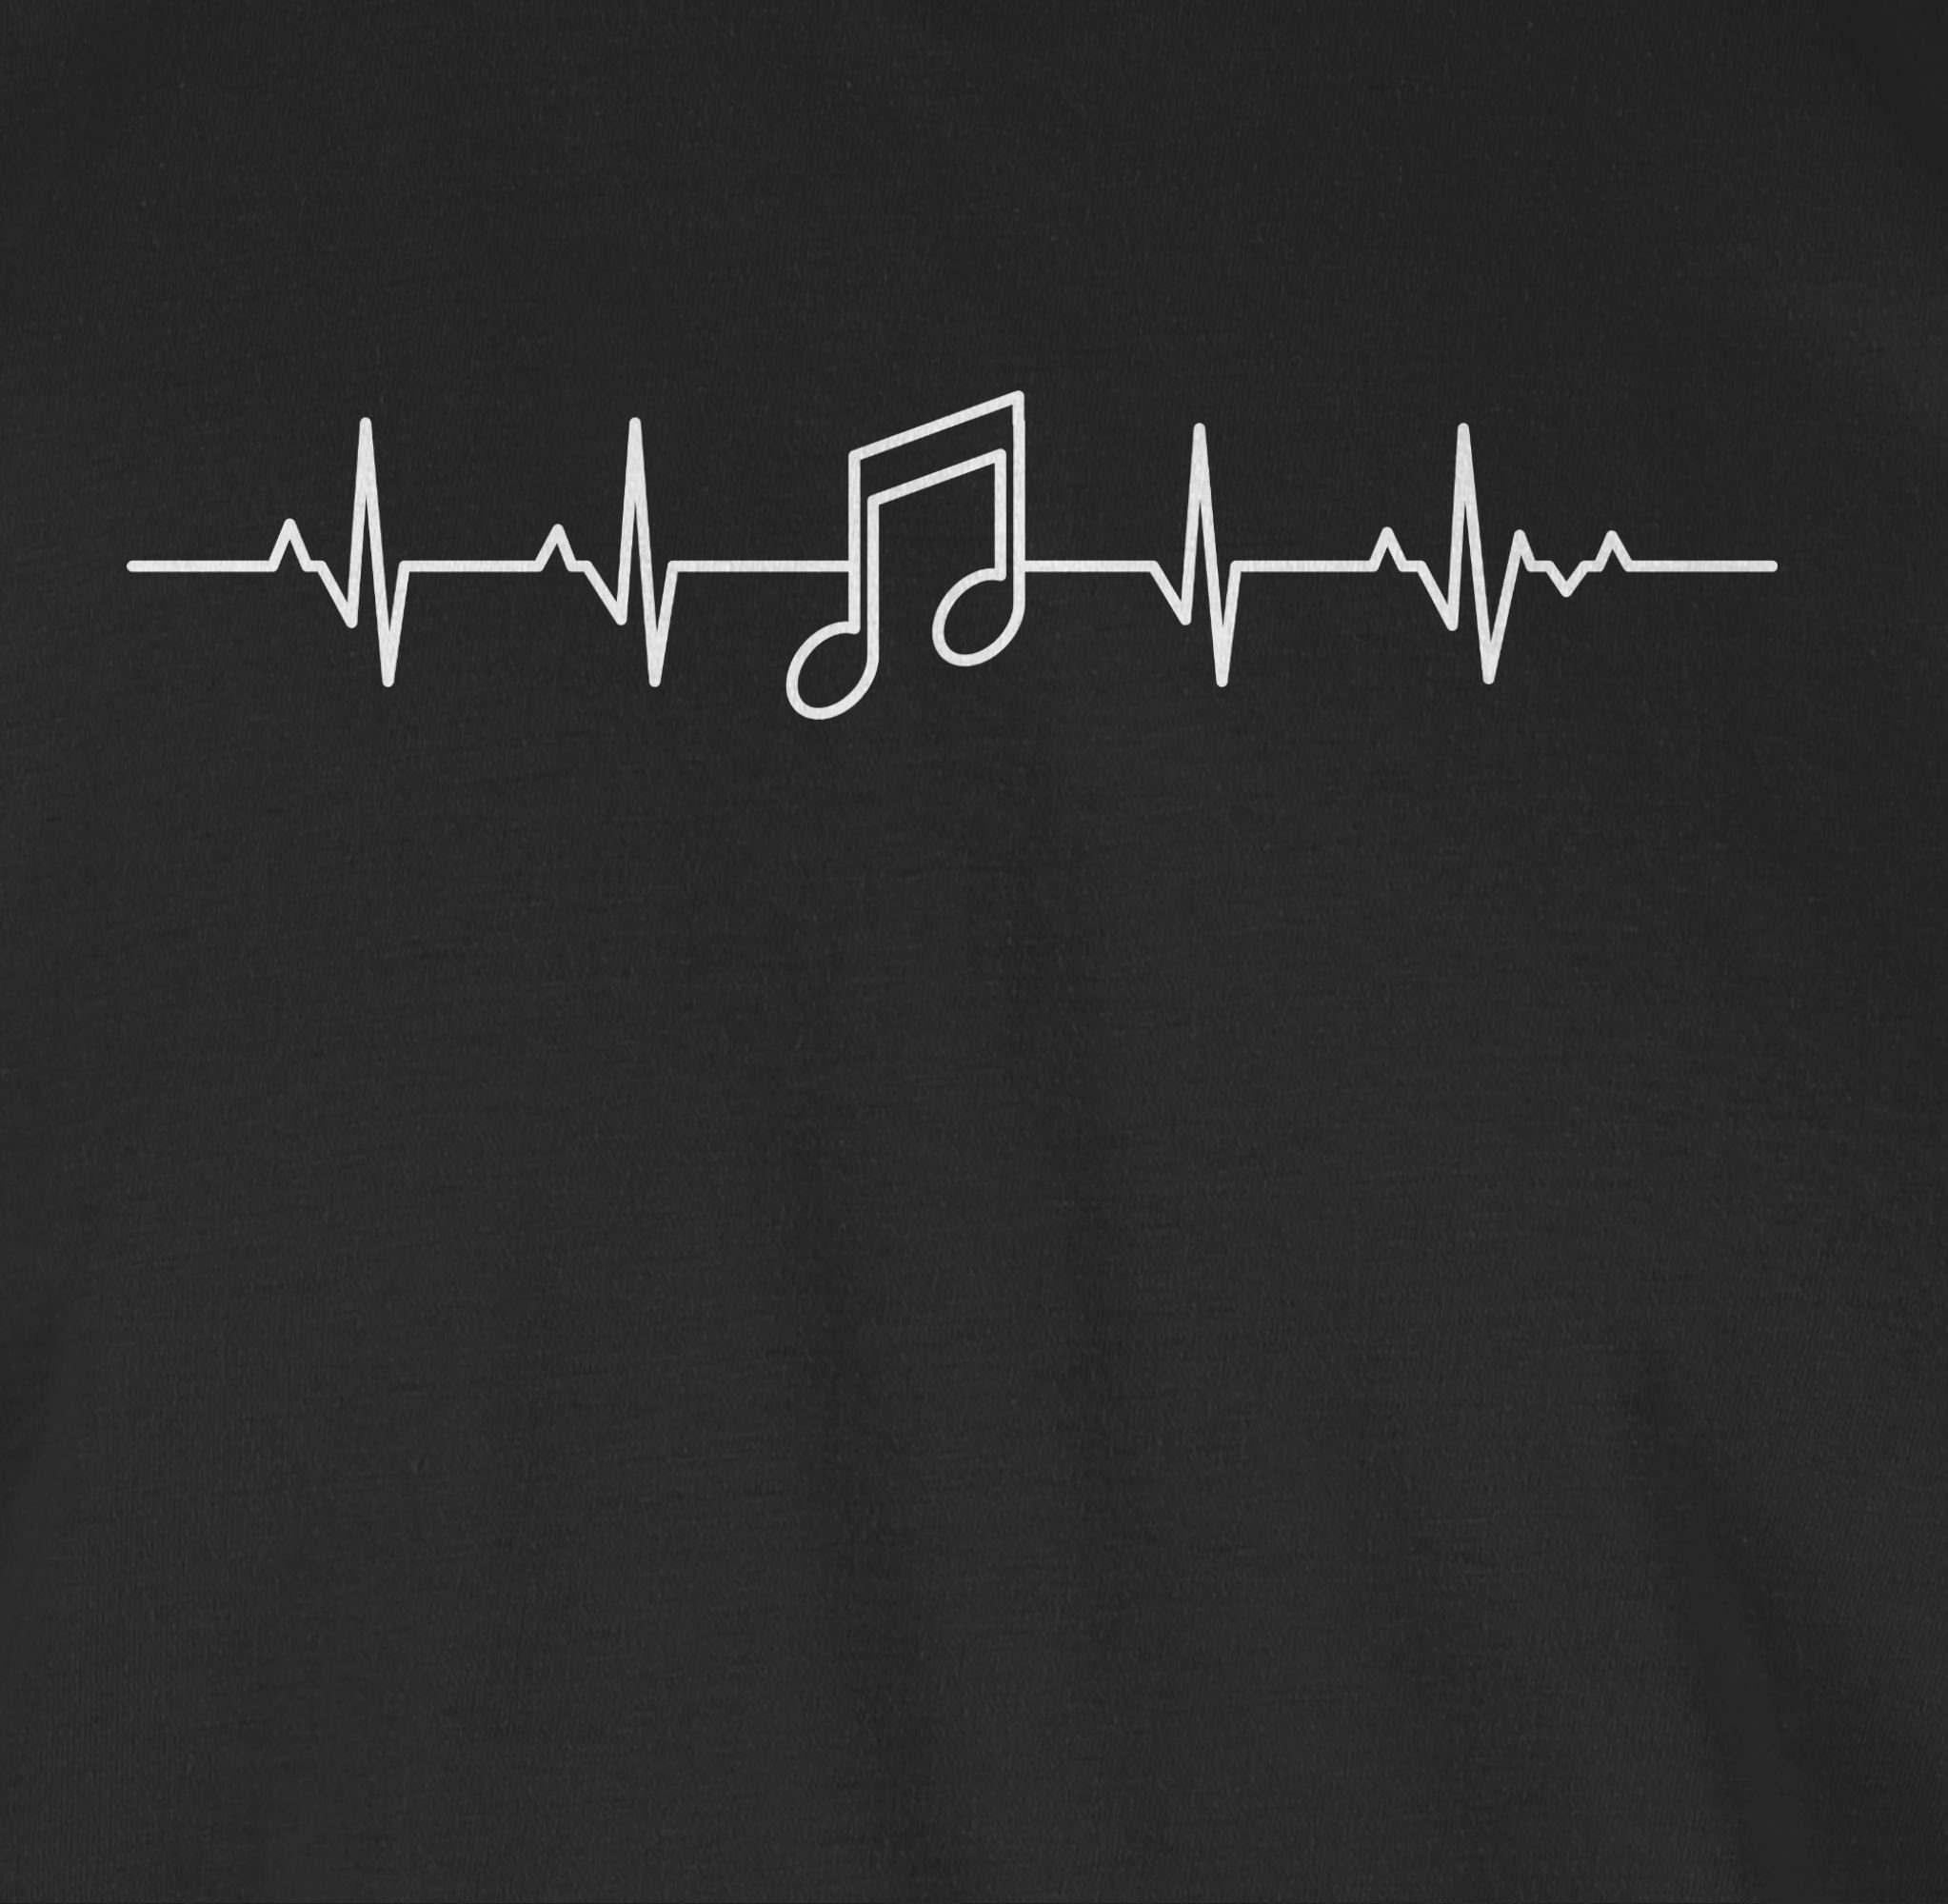 Shirtracer und Outfit Symbol Schwarz Note Musik T-Shirt Herzschlag Zeichen 01